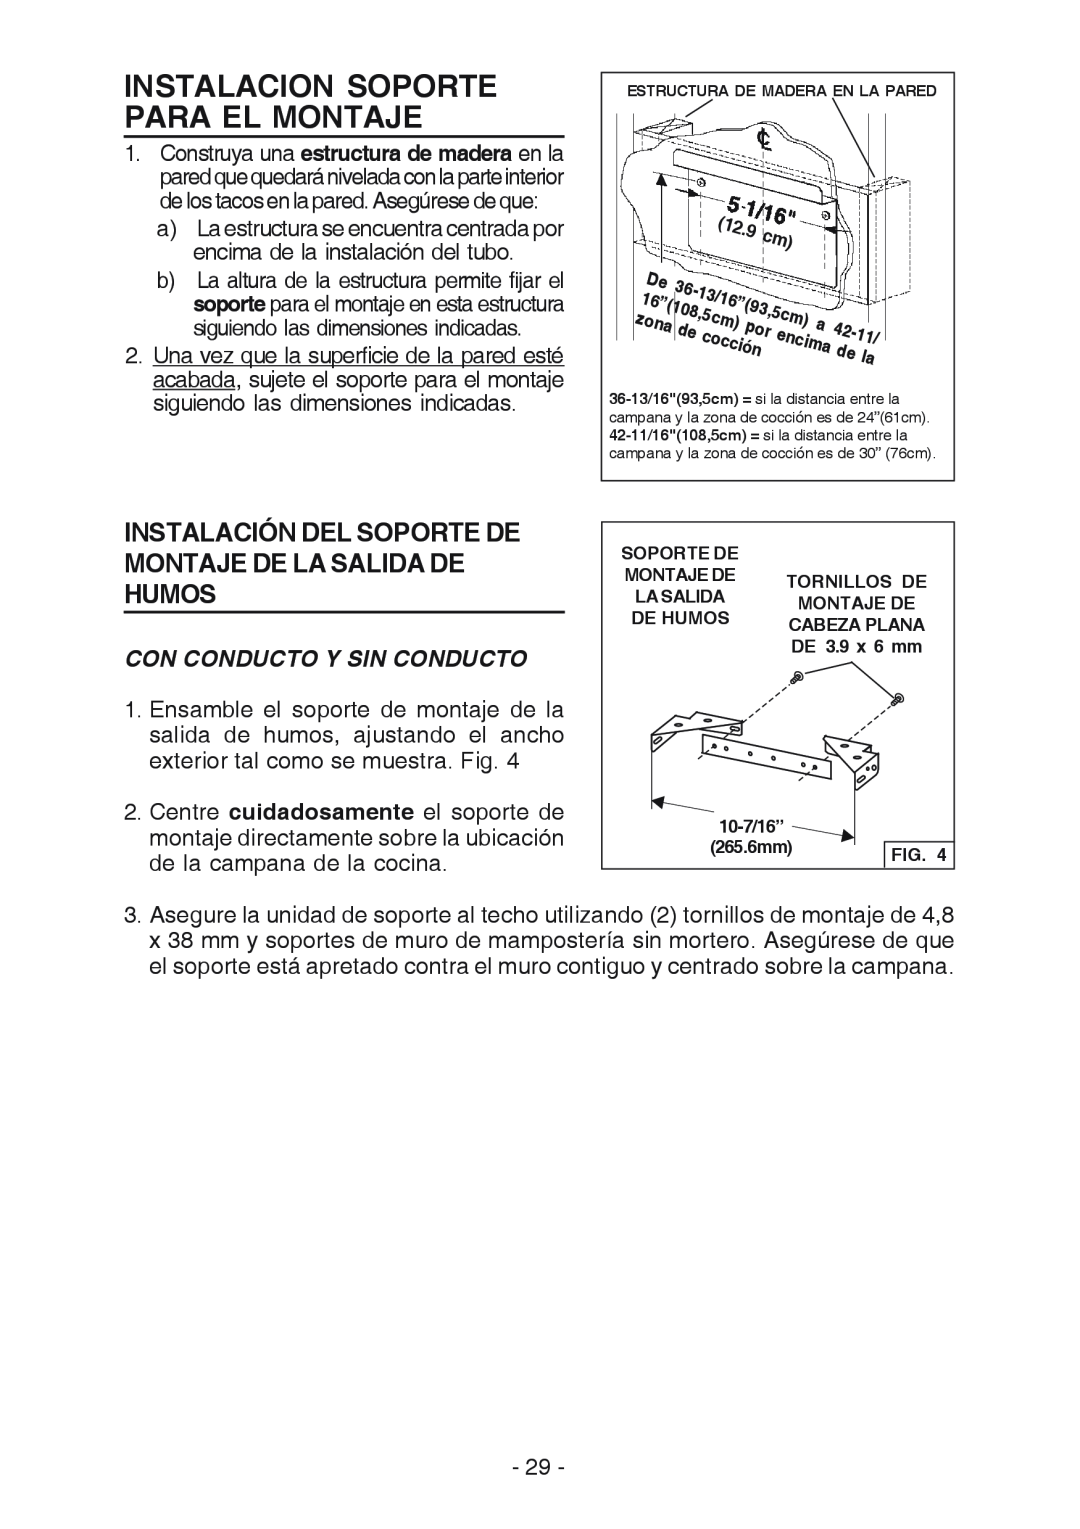 Broan K7388 manual Instalacion Soporte Para El Montaje, Instalación Del Soporte De Montaje De La Salida De Humos 